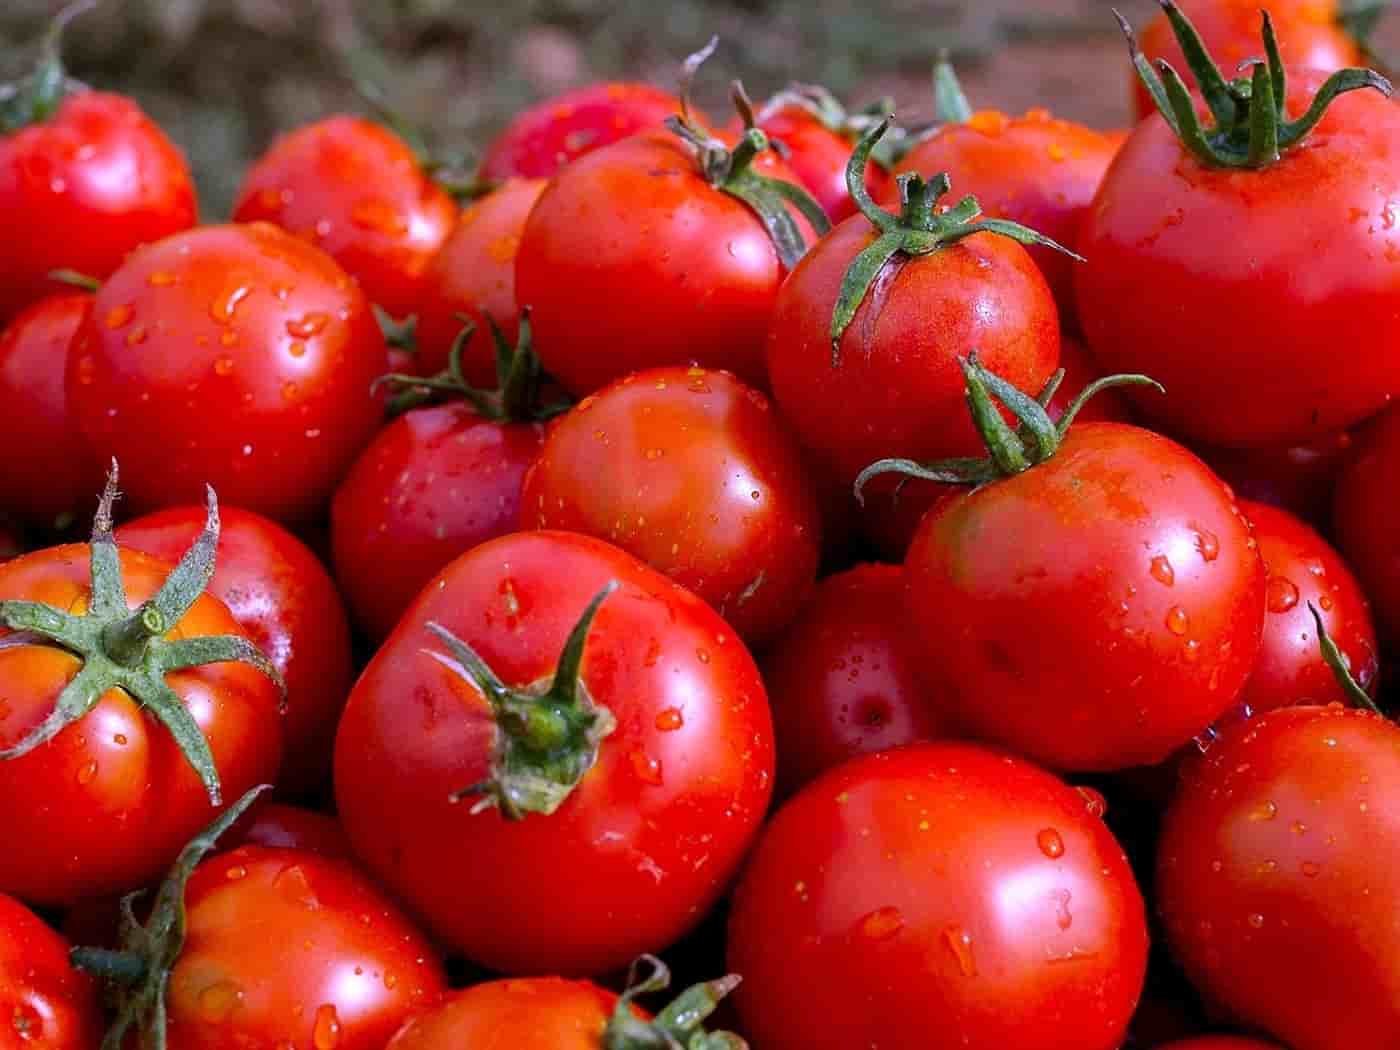 بيع الطماطم والخضار بالجملة في الأسواق العربية المزدهرة